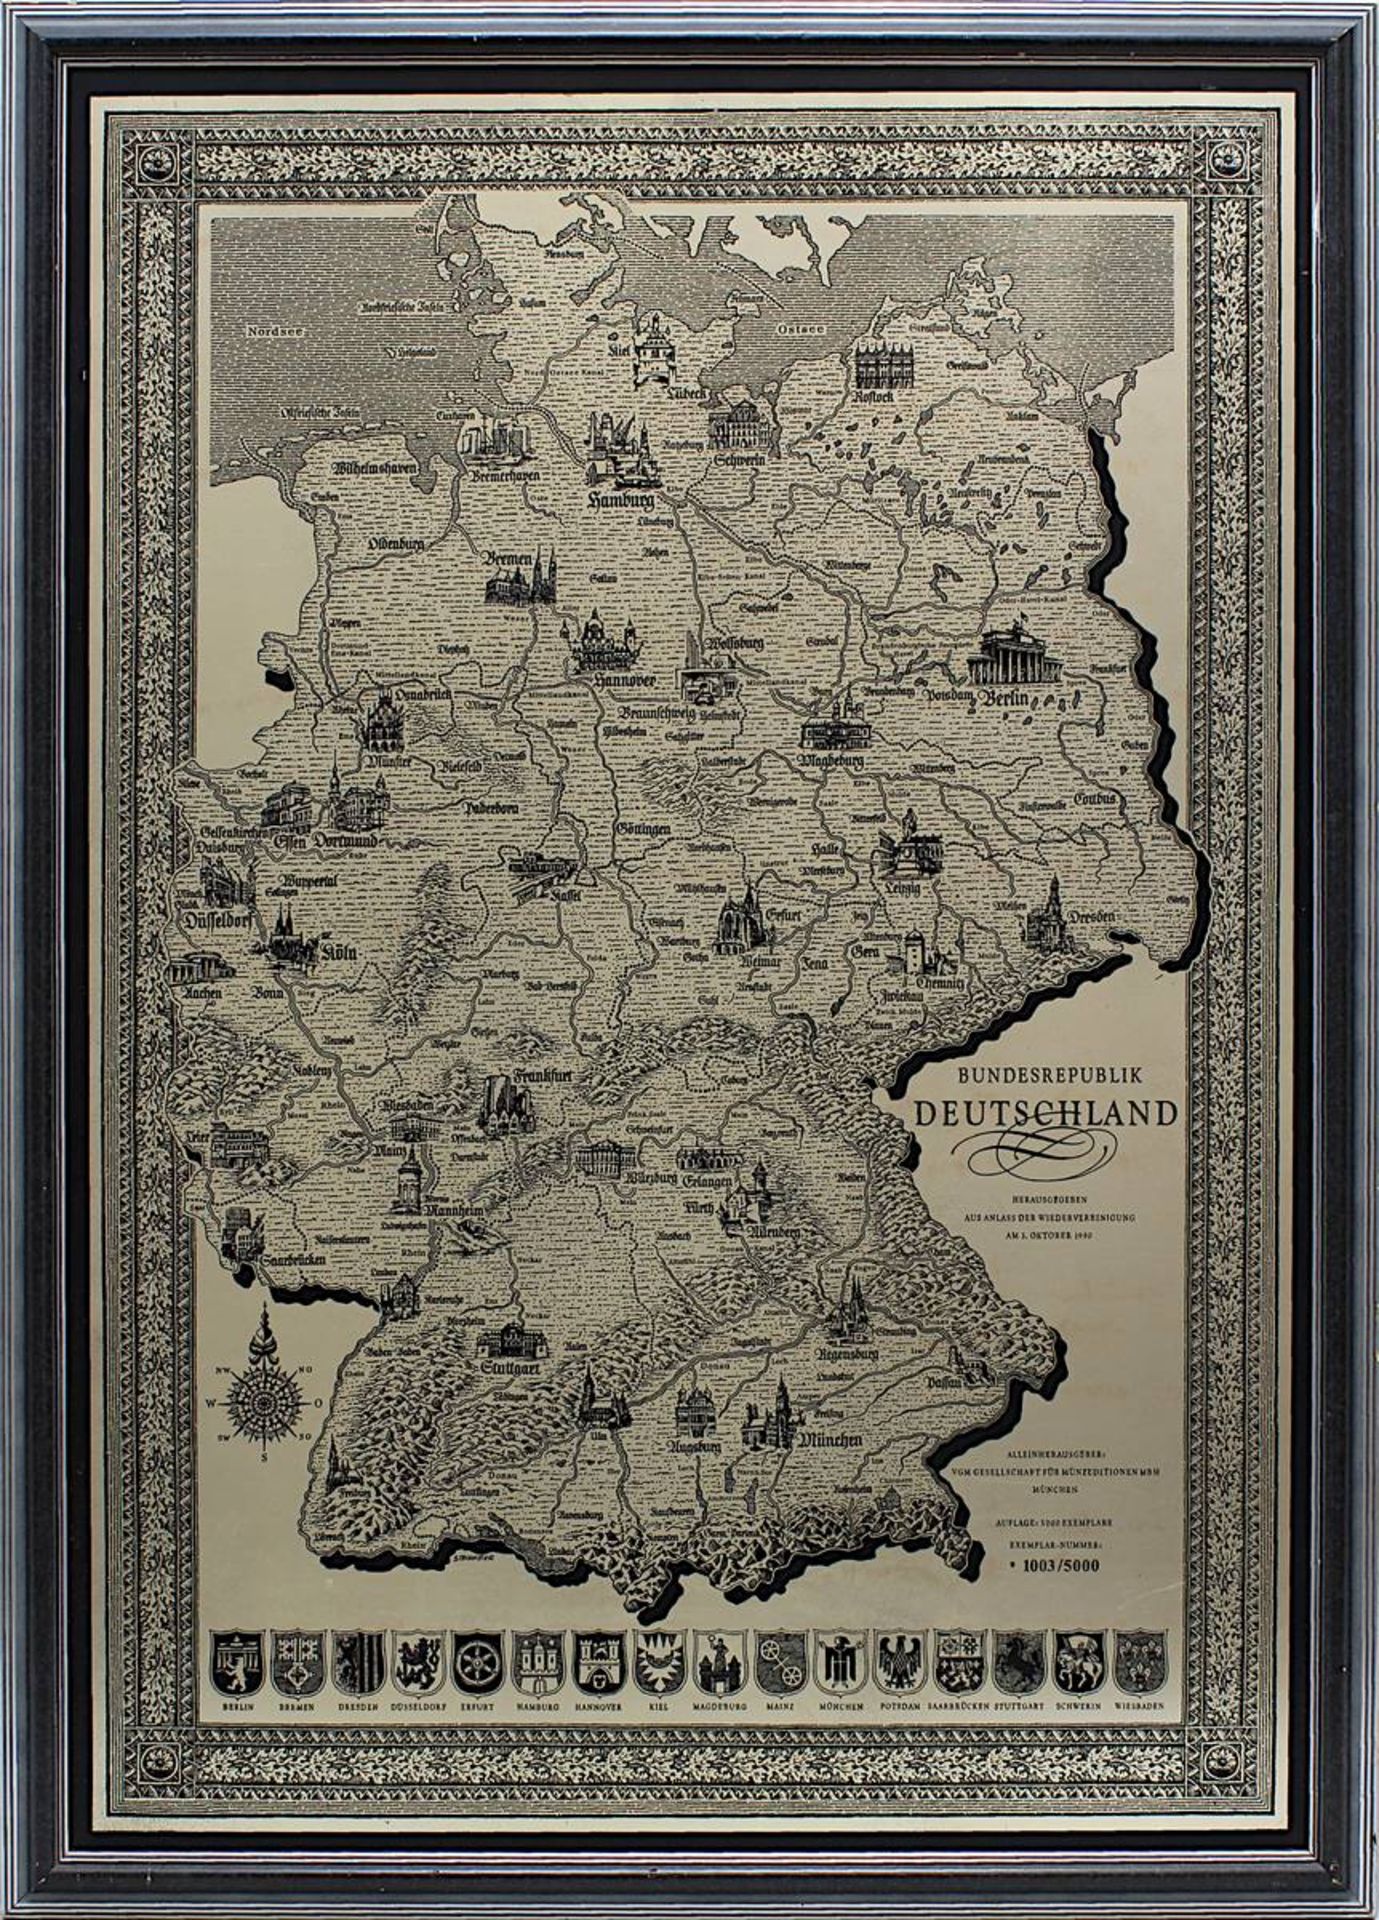 Die silberne Deutschlandkarte, Nr. 1003/5000, in Silber gravierte Sonderedition der Gesellschaft für